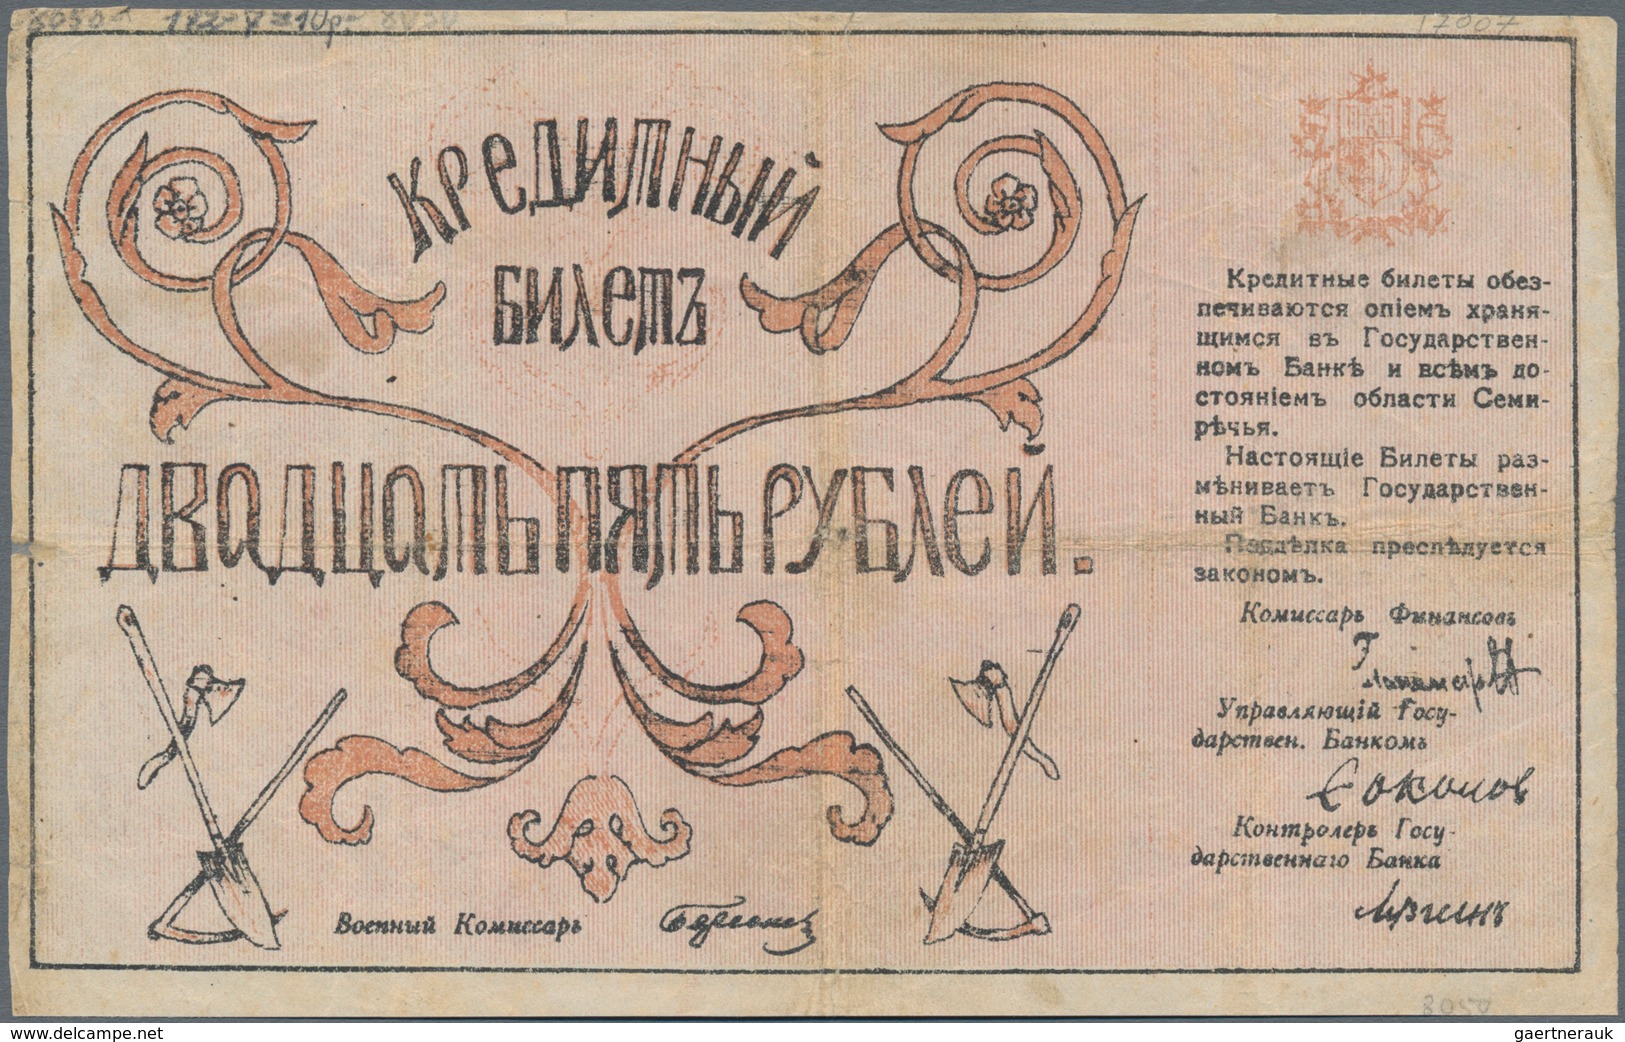 Russia / Russland: Central Asia - Semireche Region 25 Rubles 1918, P.S1122 (R. 20607a, K. 7), Condit - Russia